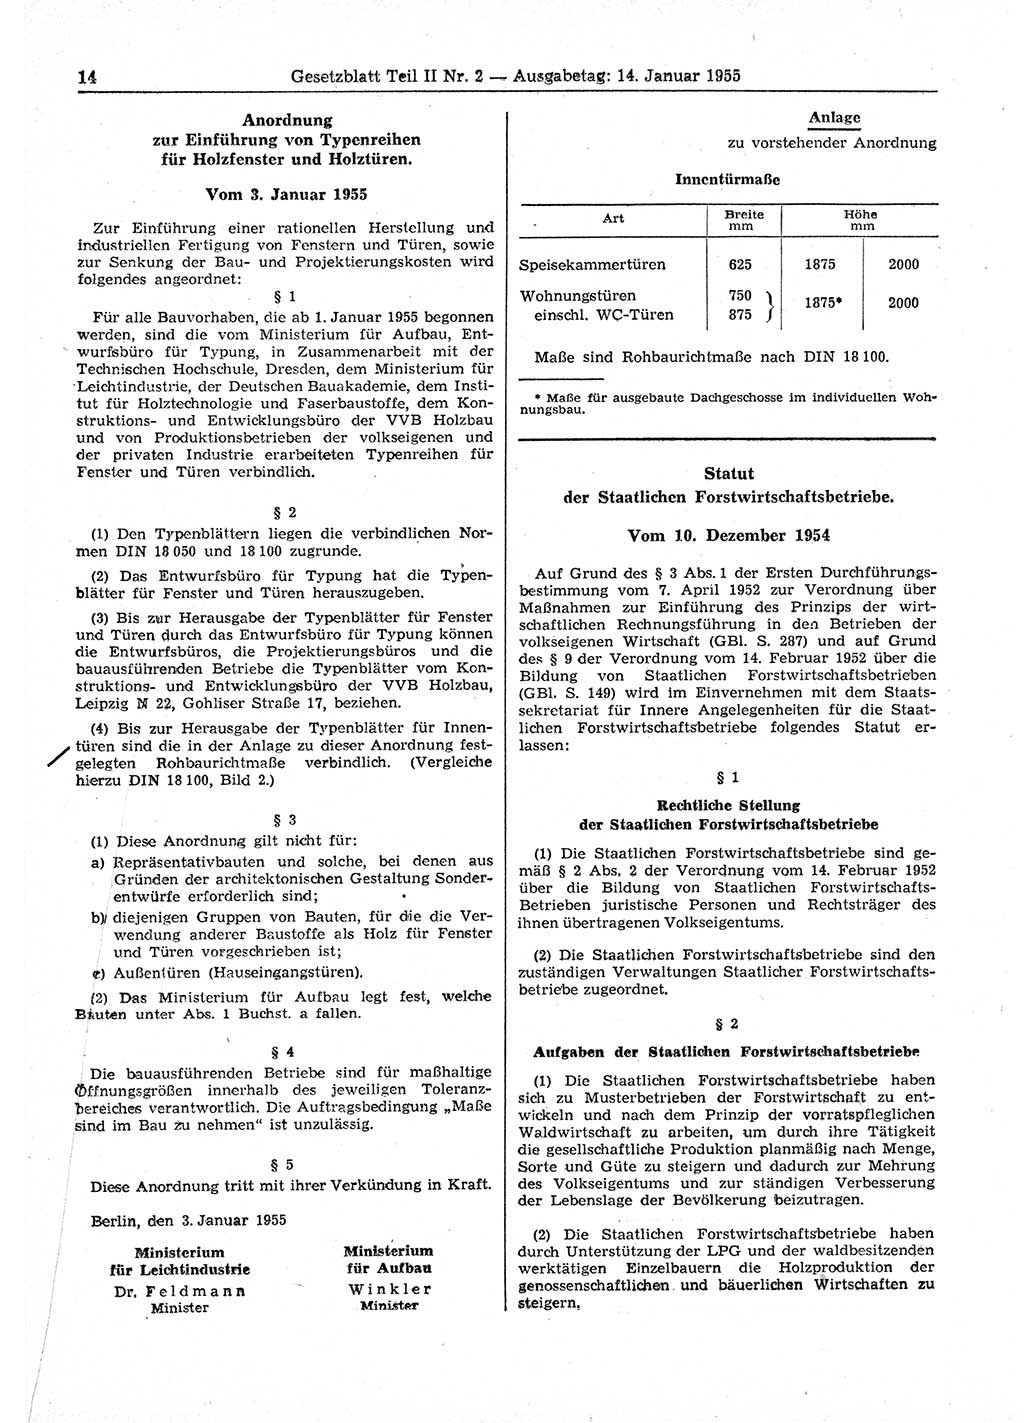 Gesetzblatt (GBl.) der Deutschen Demokratischen Republik (DDR) Teil ⅠⅠ 1955, Seite 14 (GBl. DDR ⅠⅠ 1955, S. 14)